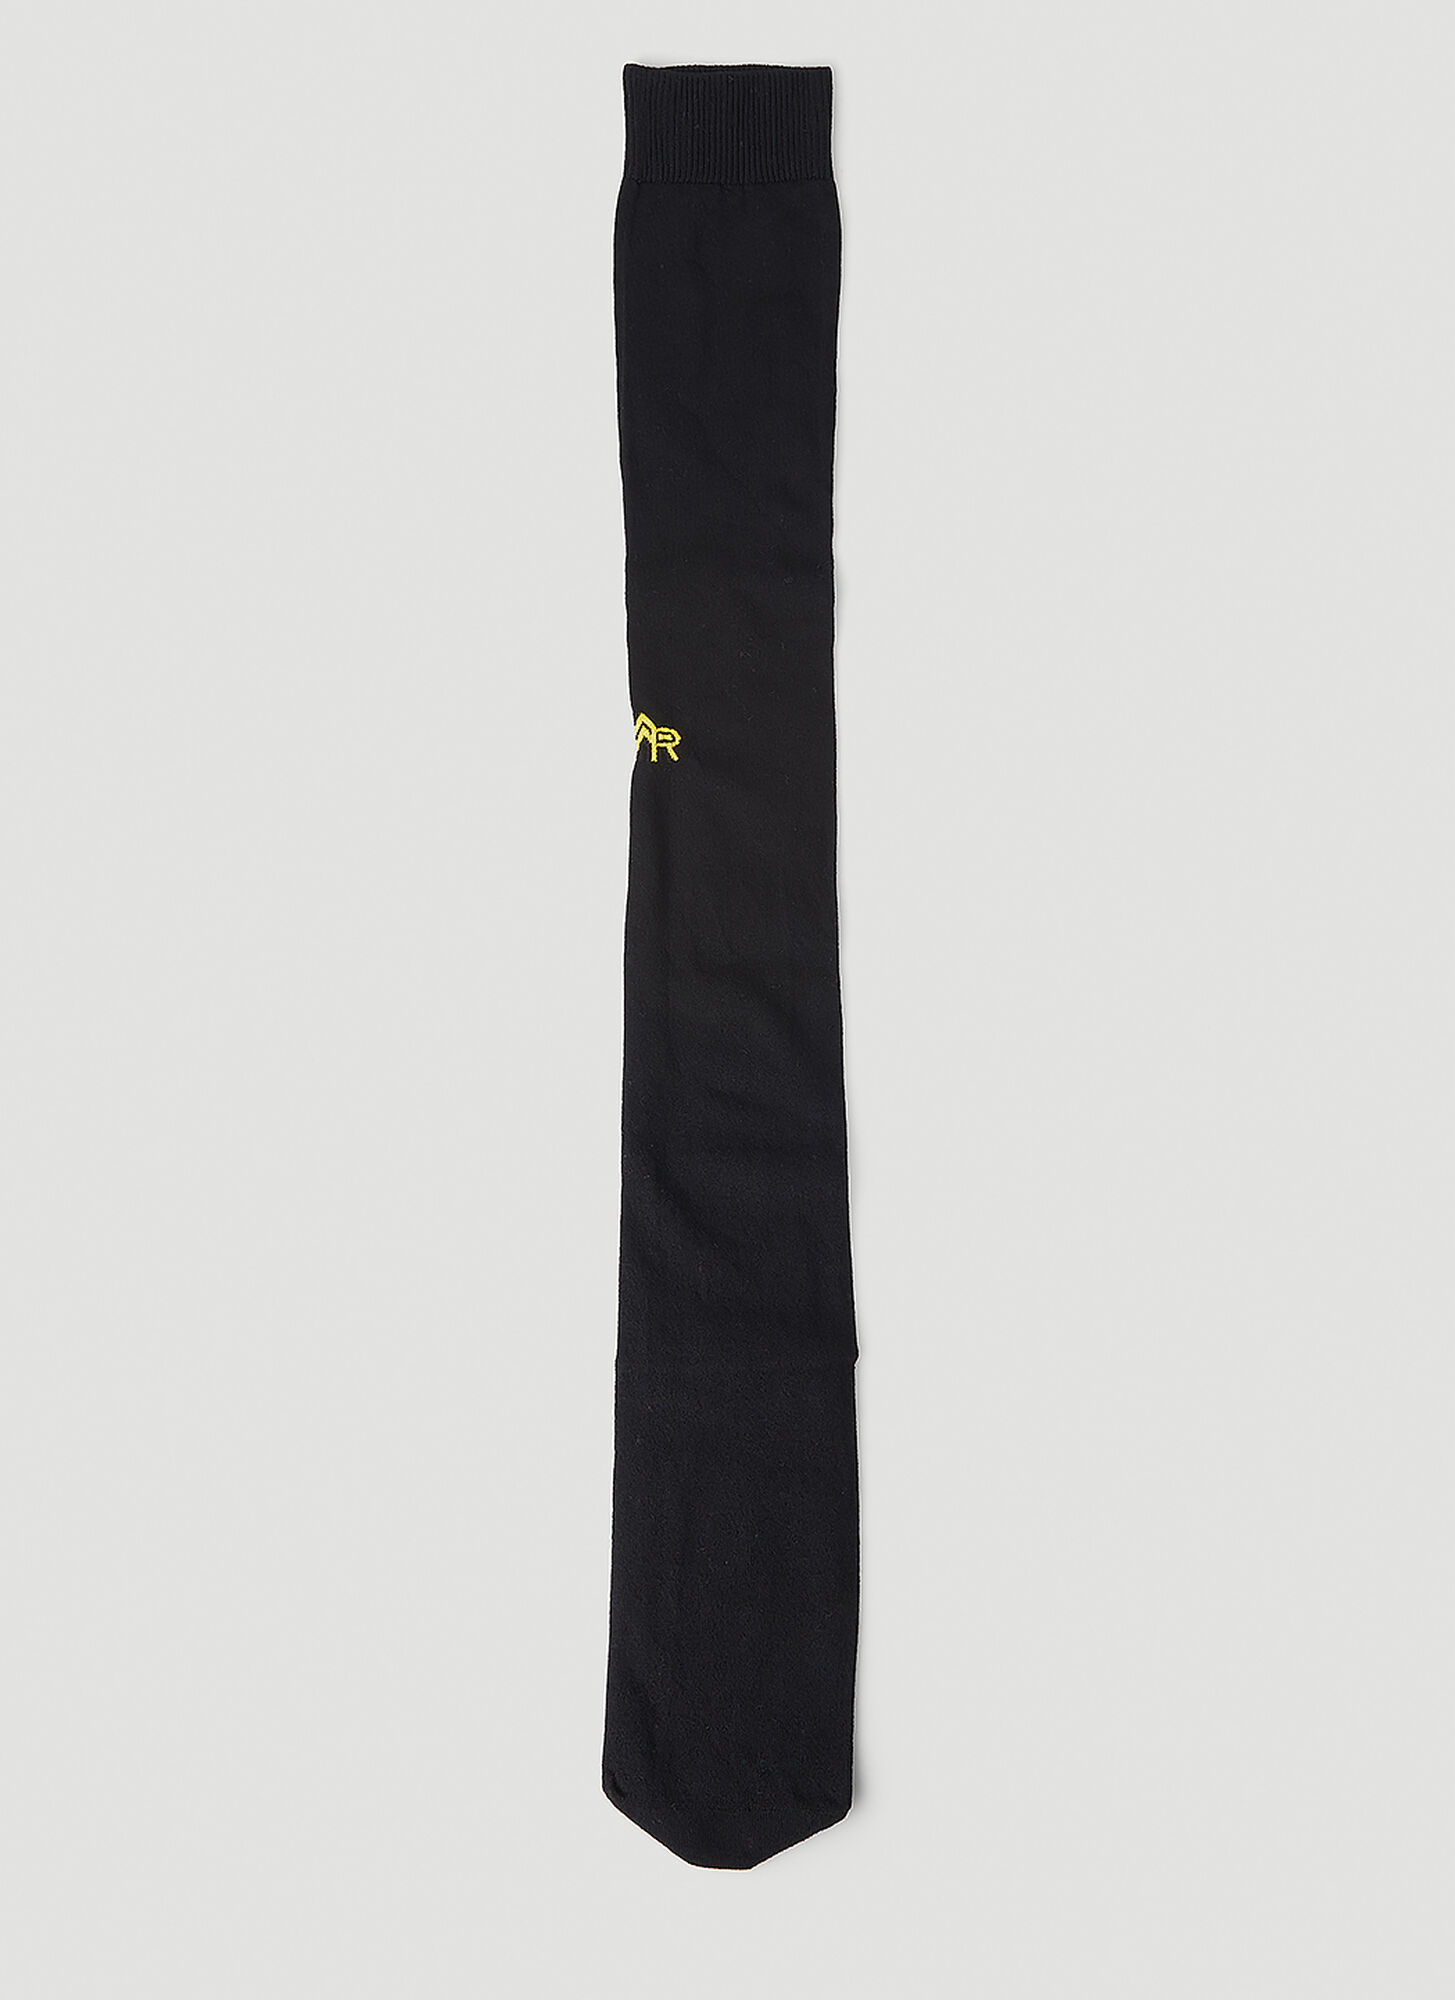 Meryll Rogge Logo Embroidered Long Socks Female Black